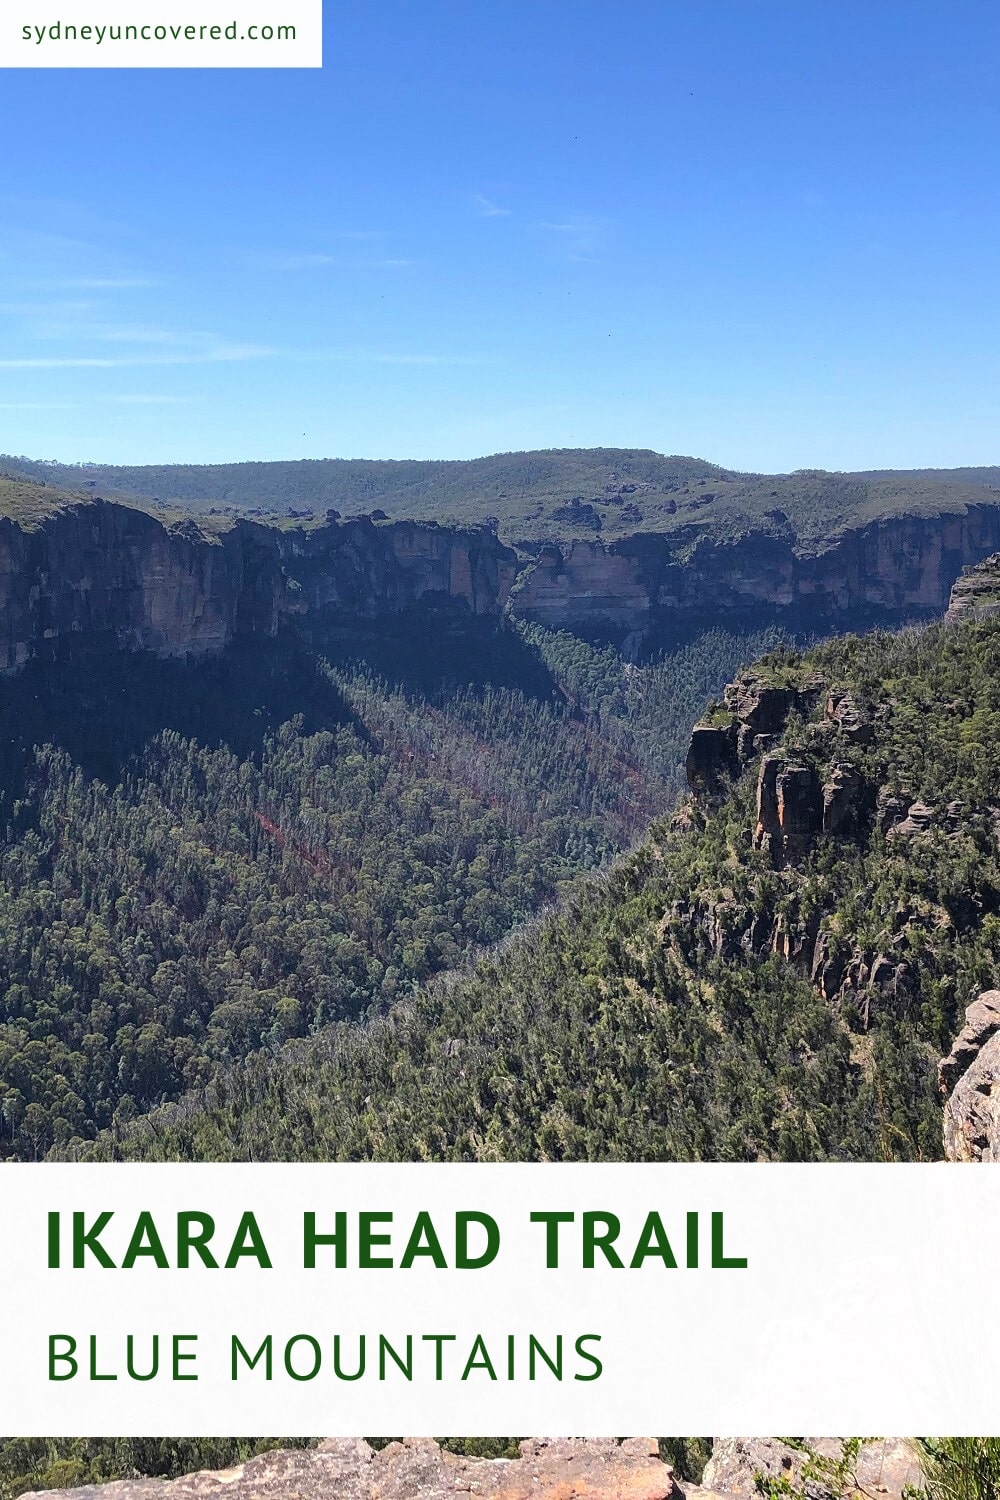 Ikara Head Trail in the Blue Mountains